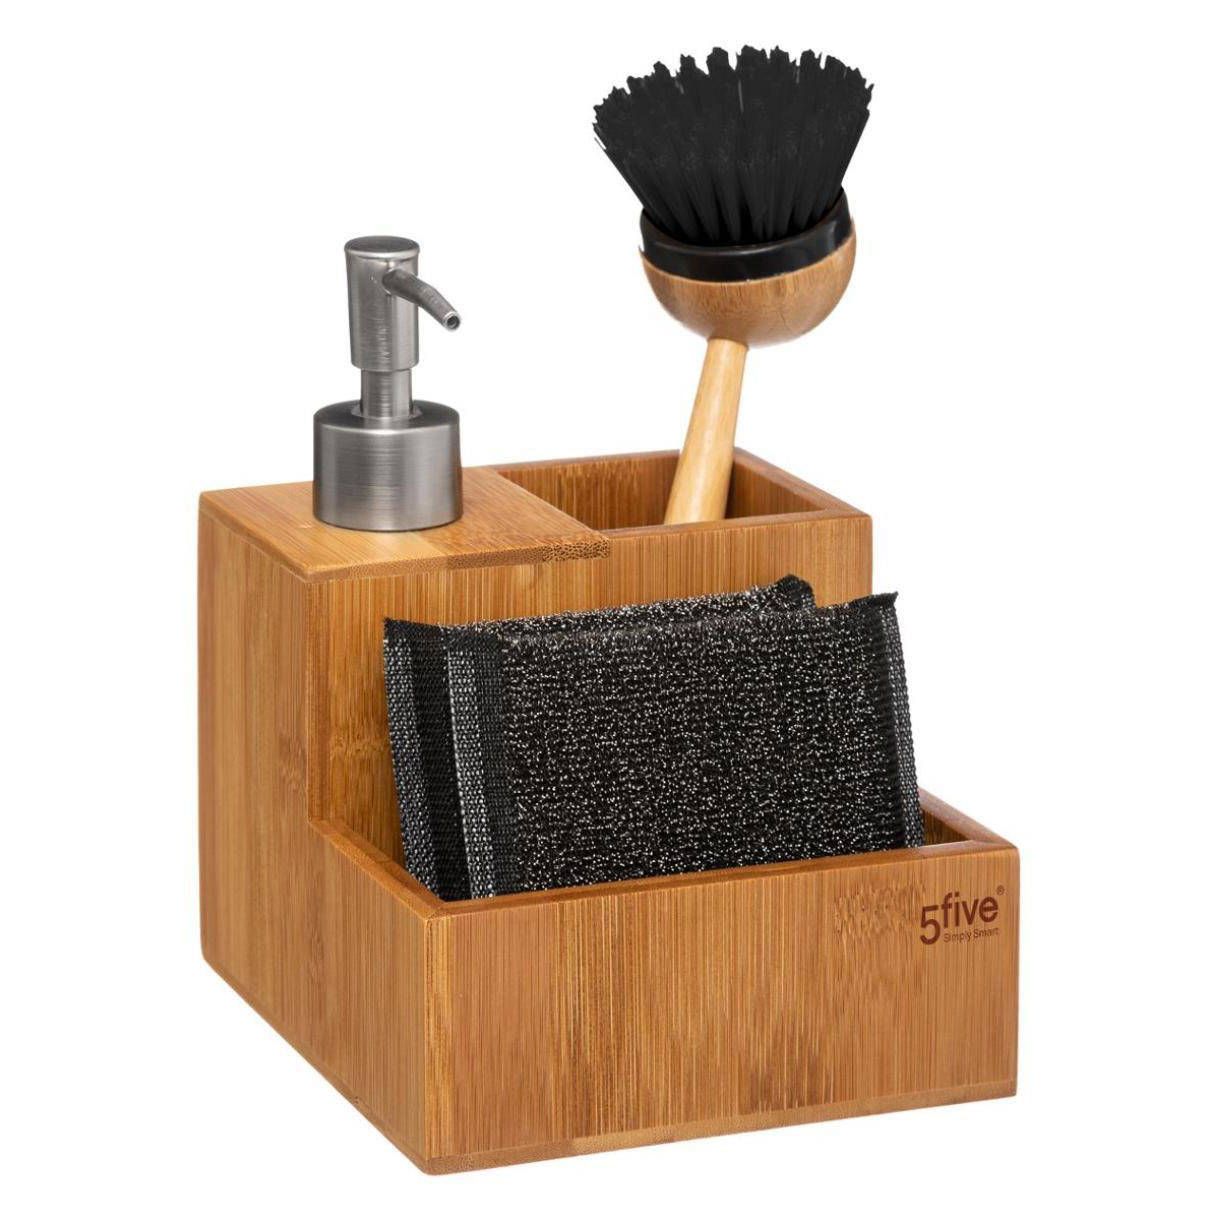 5five Simply Smart Sada příslušenství pro mytí nádobí, bambus - EMAKO.CZ s.r.o.